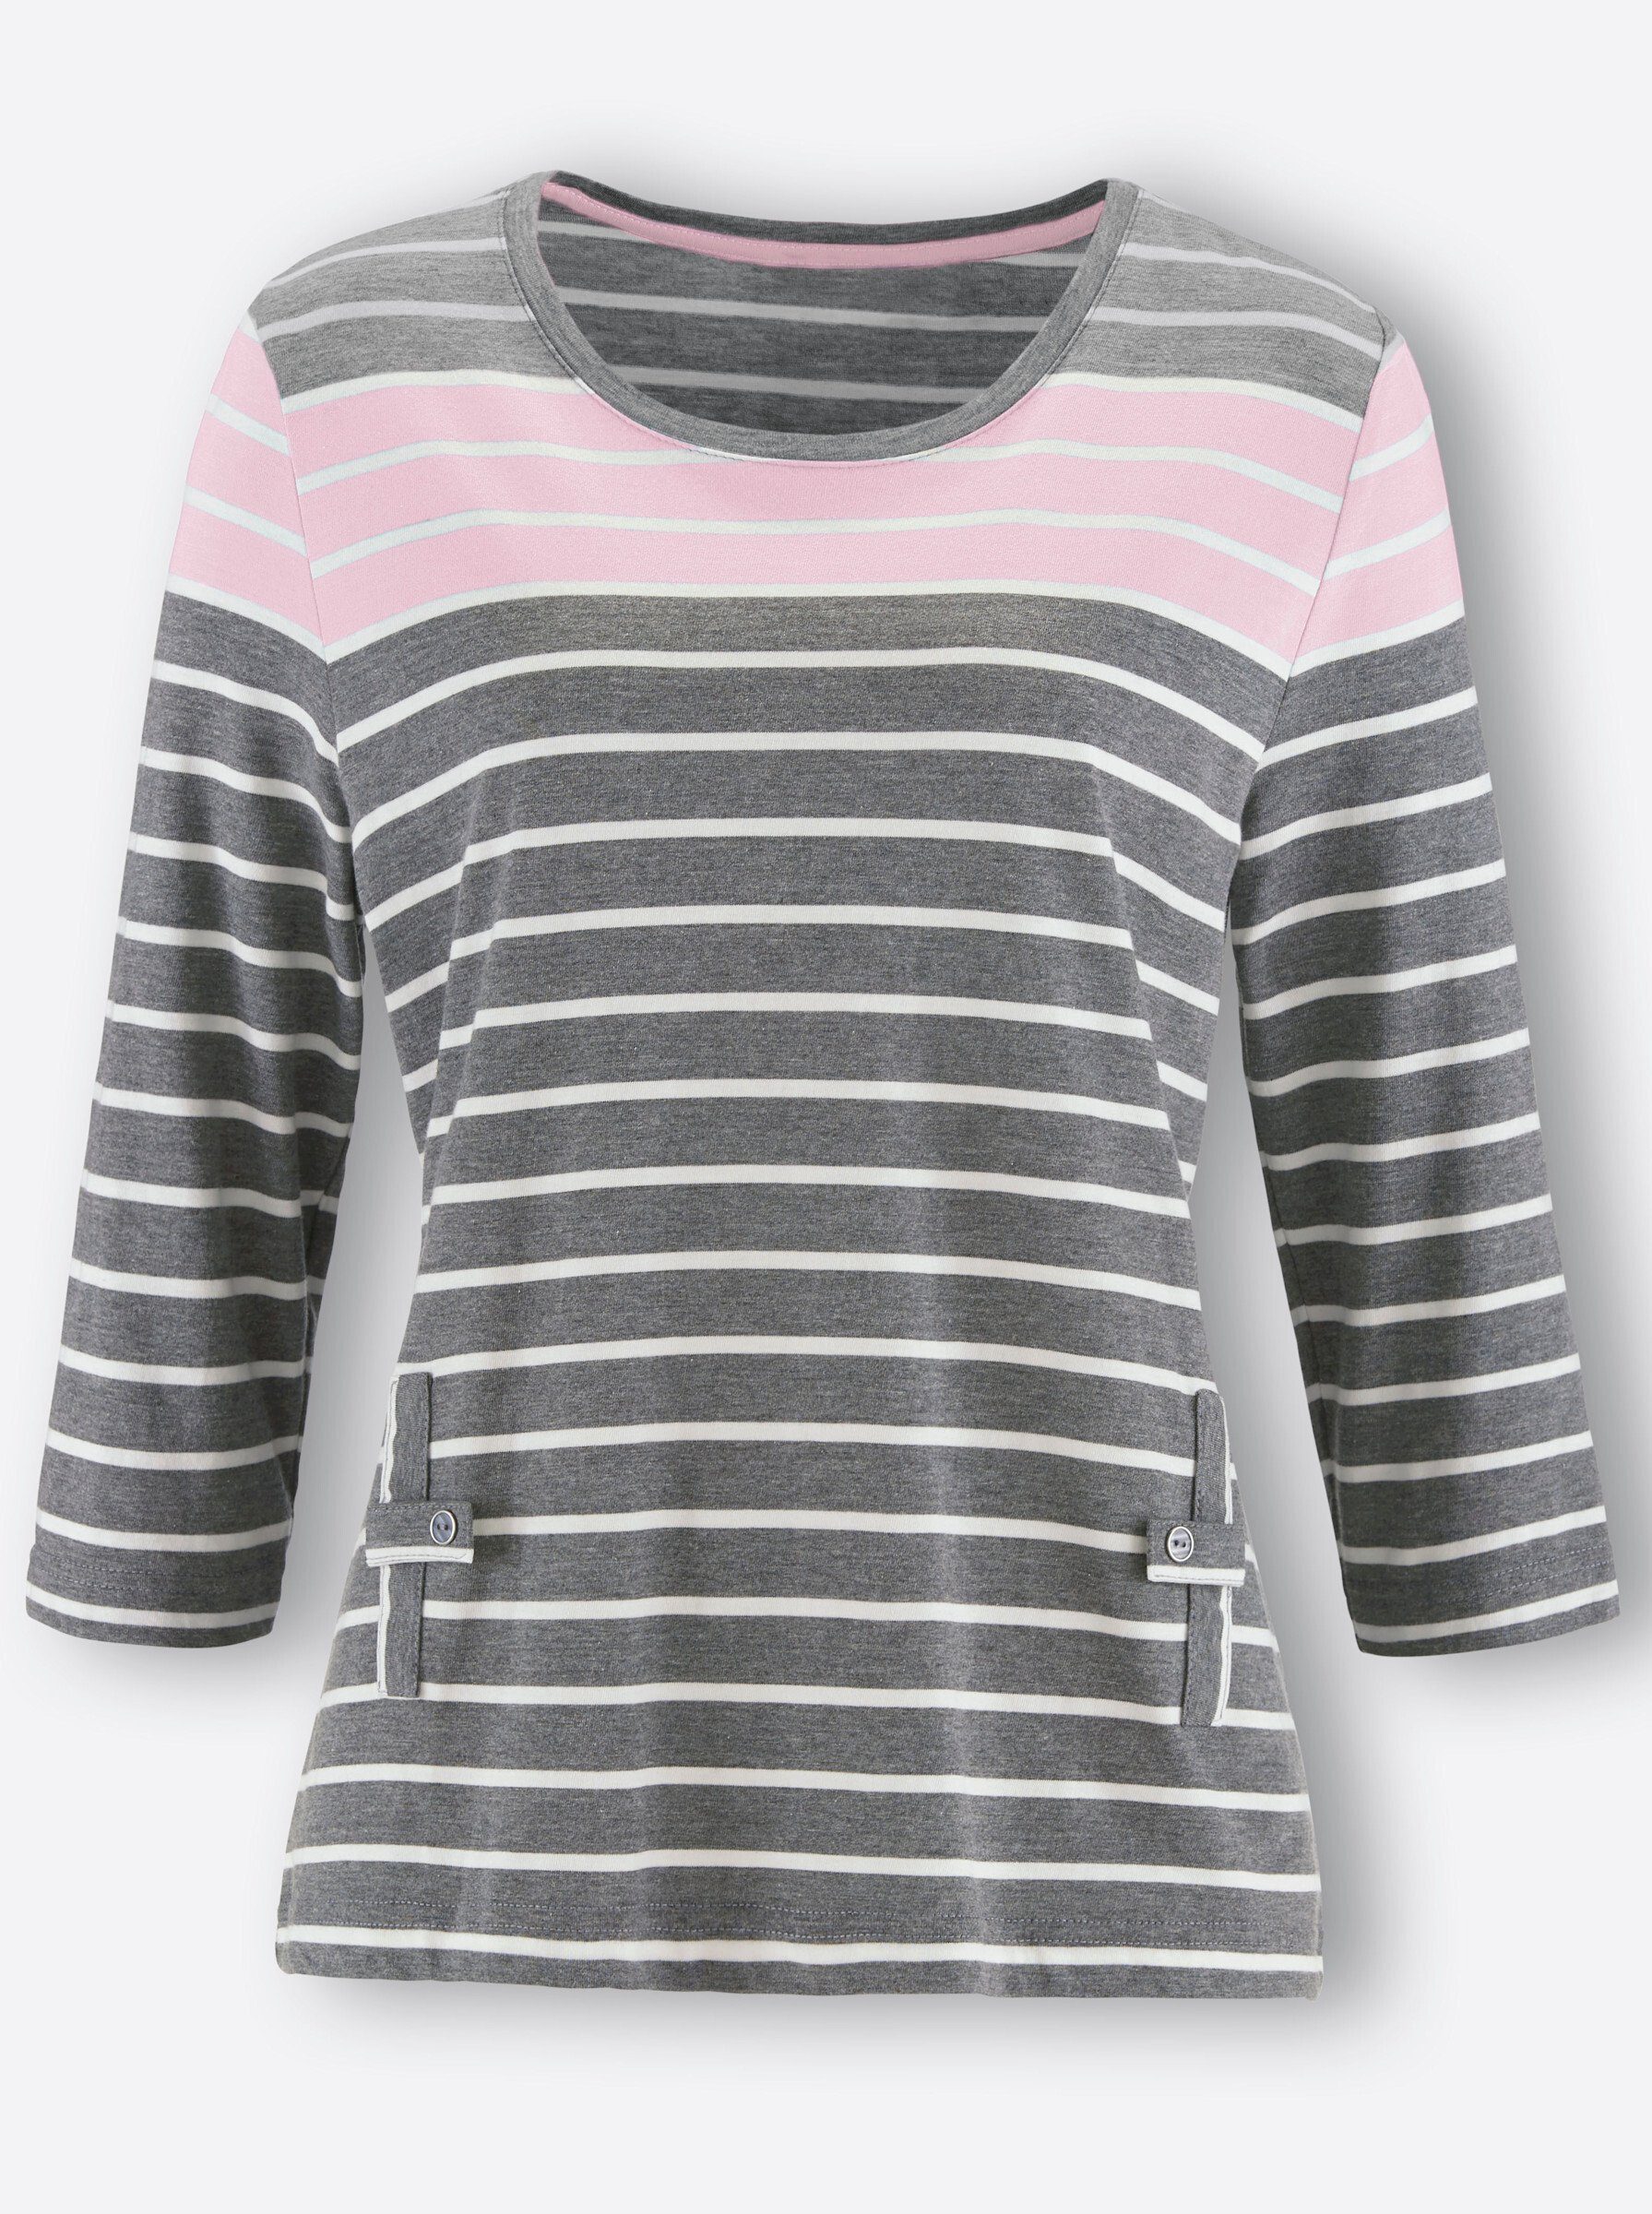 grau-rosé-gestreift T-Shirt WEIDEN WITT